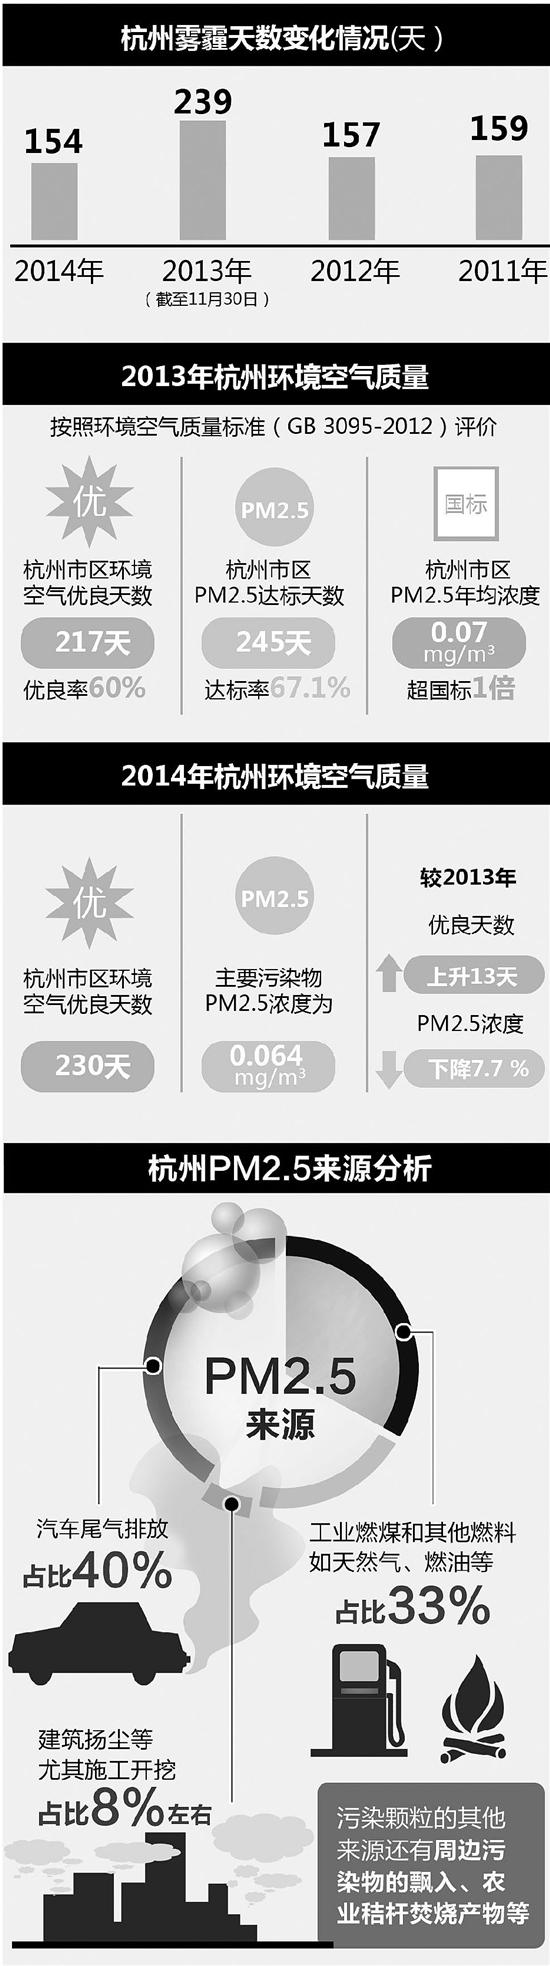 柴静发空气质量调查影片 杭州去年154天有雾霾